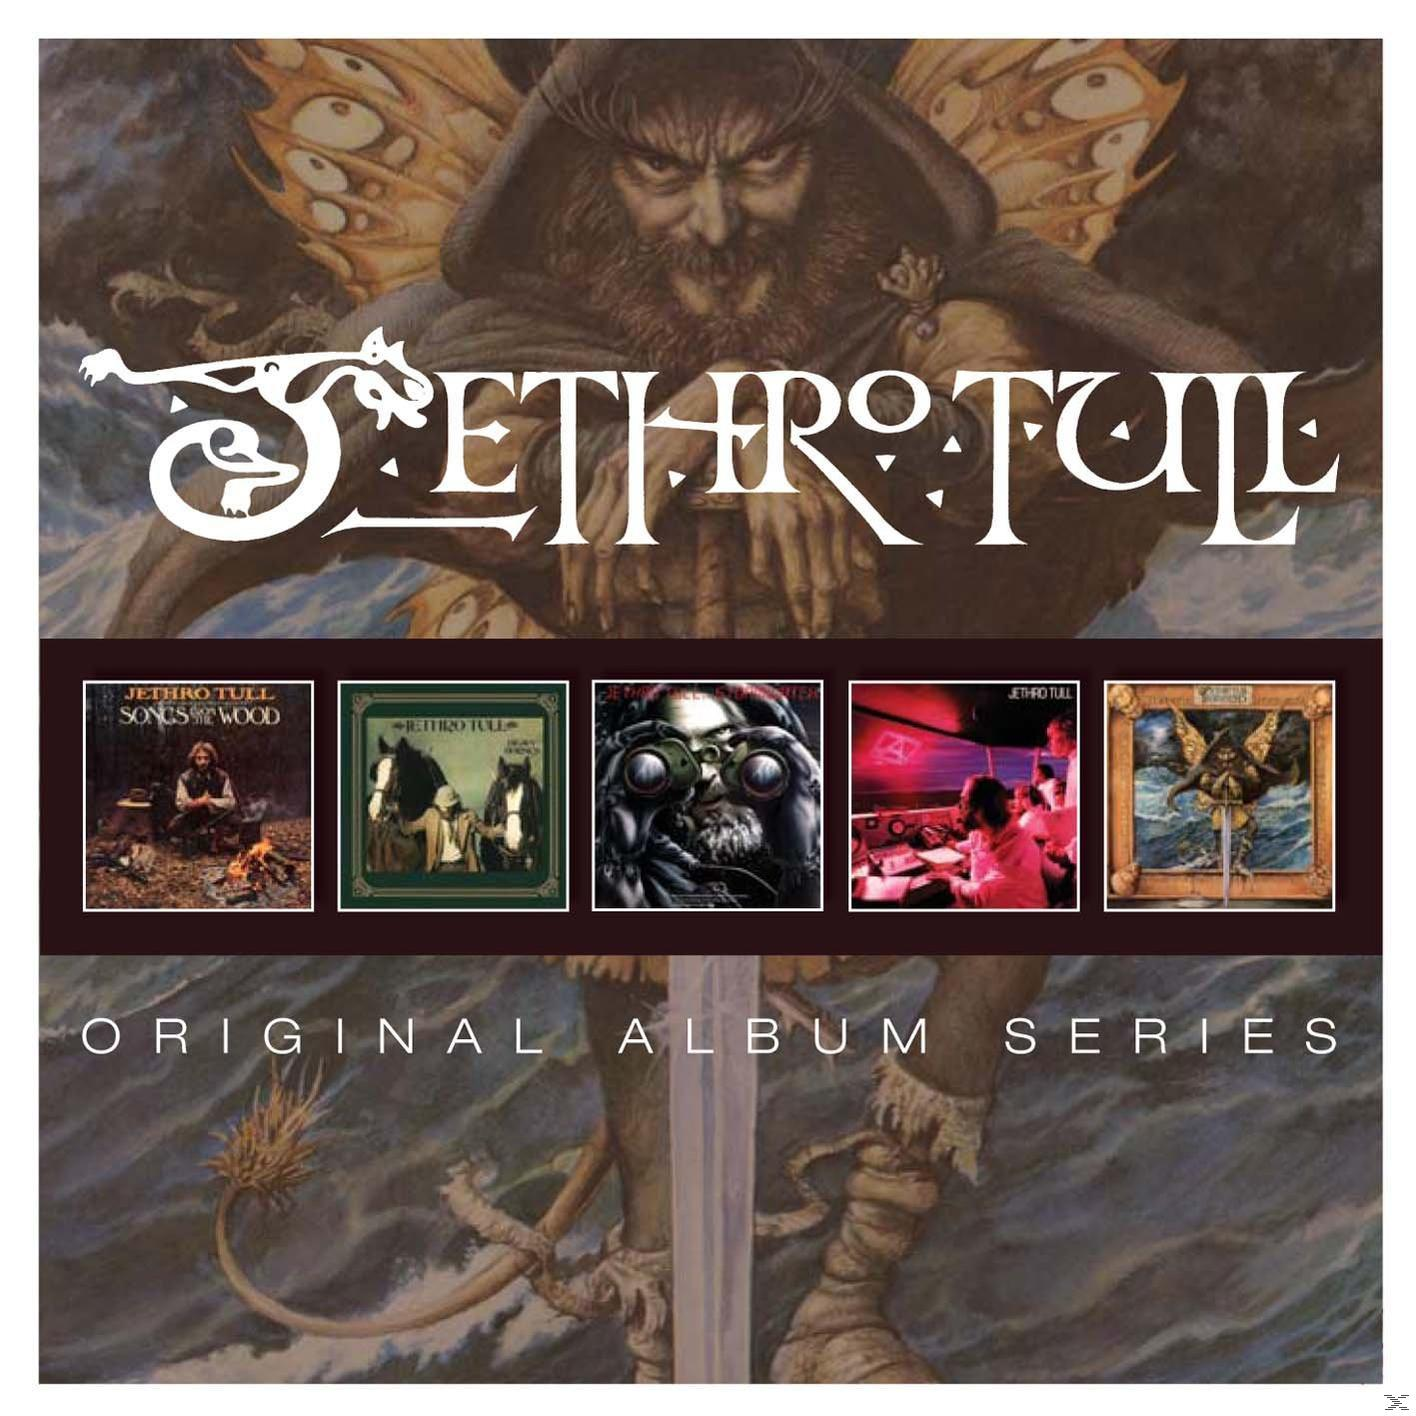 (5 - Original Album Series Cd Box) Tull - Jethro (CD)